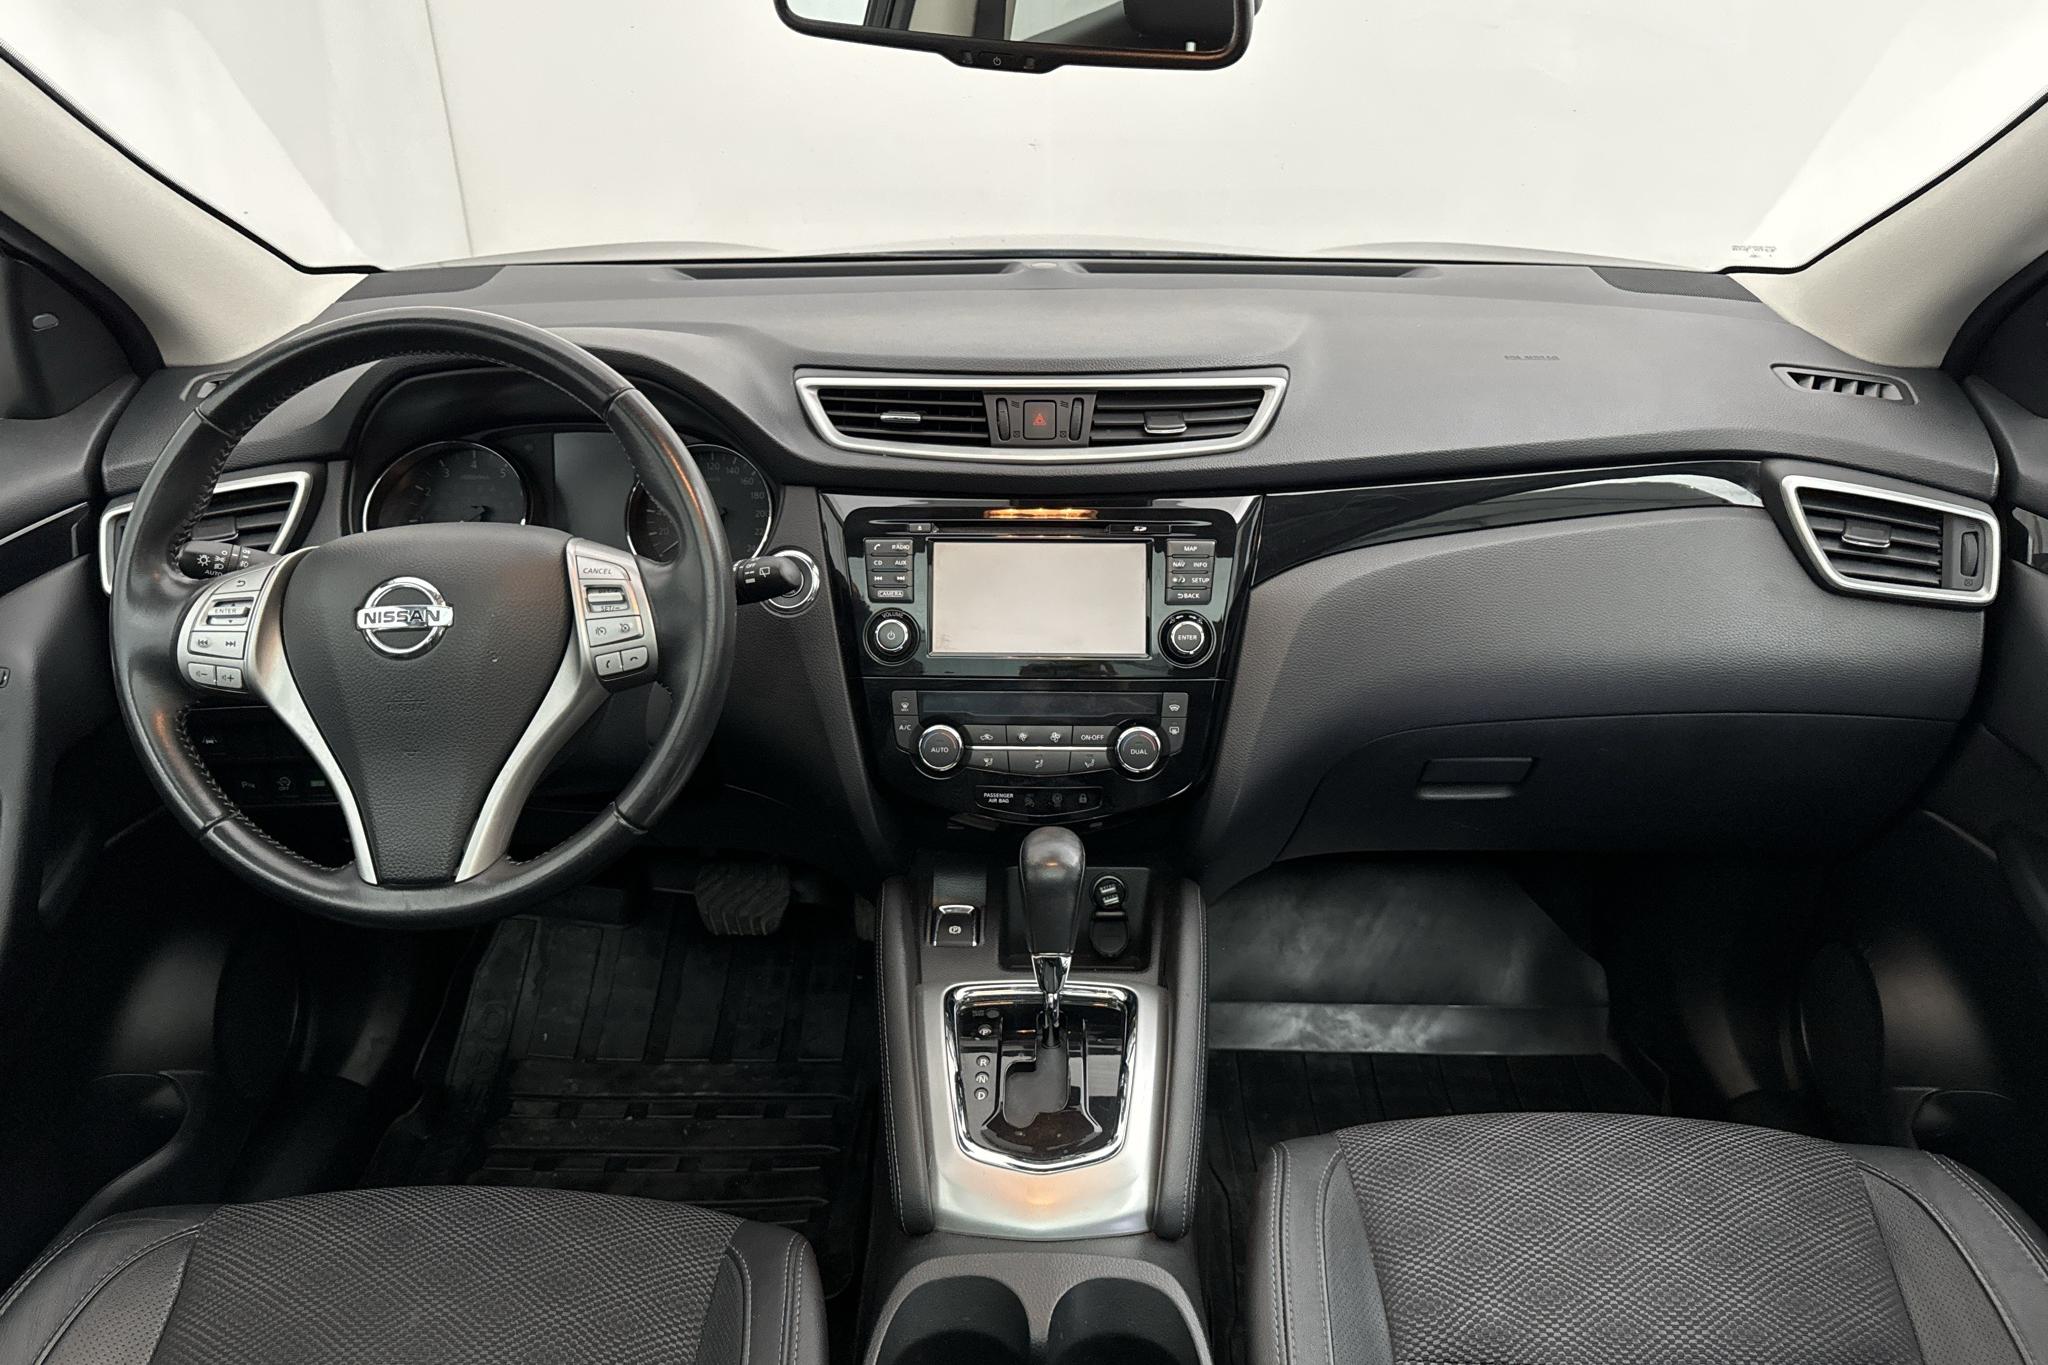 Nissan Qashqai 1.2 (115hk) - 7 022 mil - Automat - svart - 2016